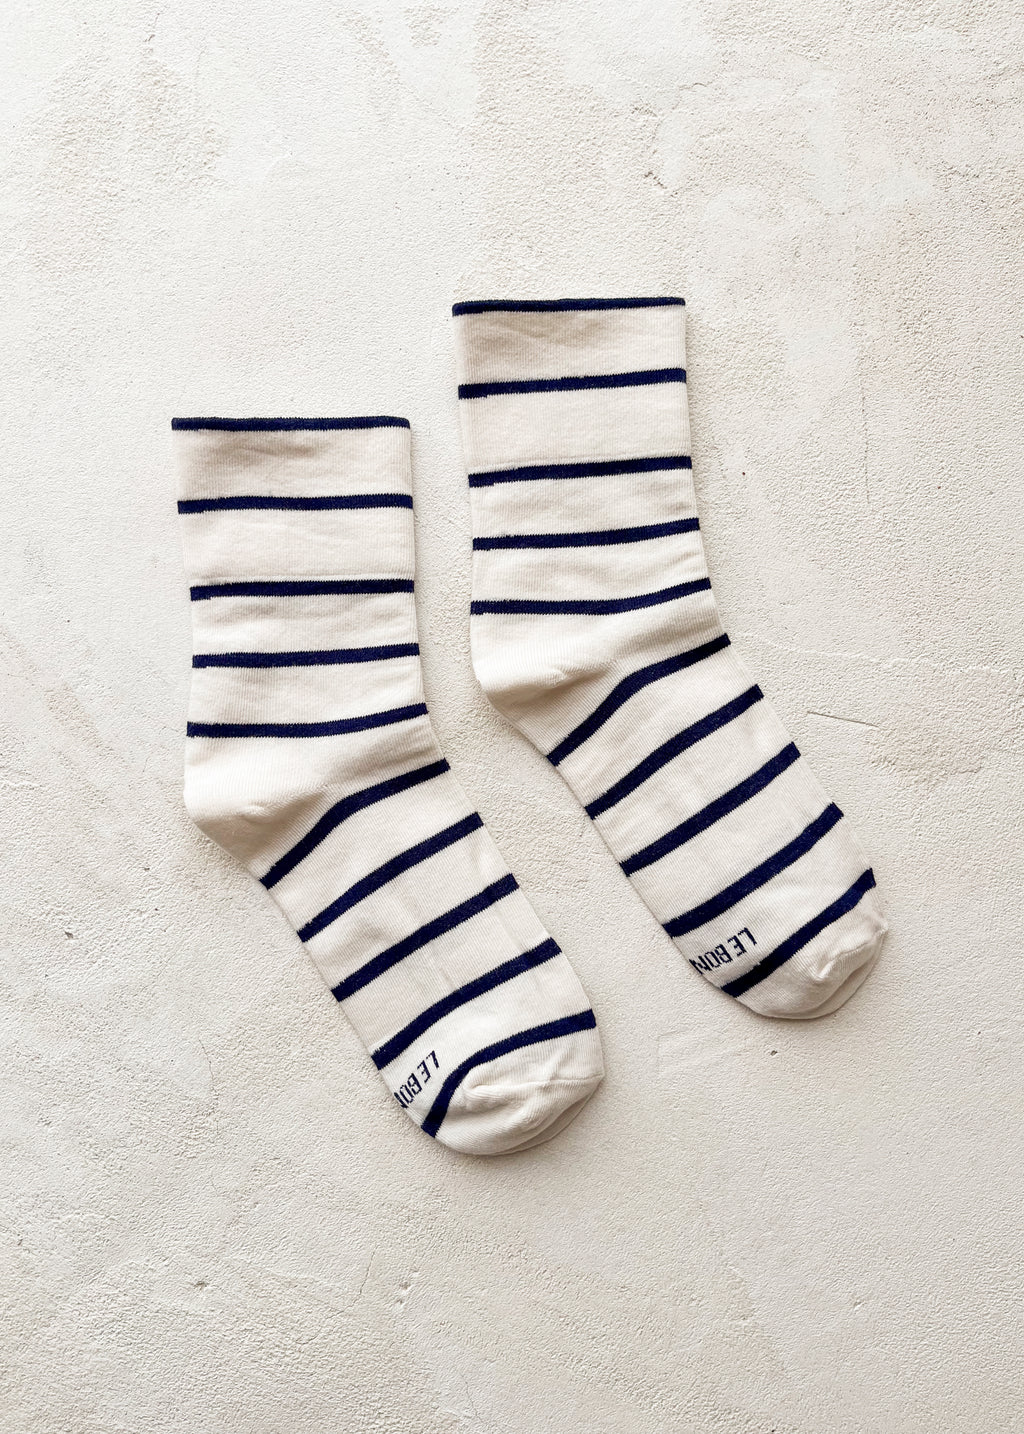 Wally Socks | Breton Stripe